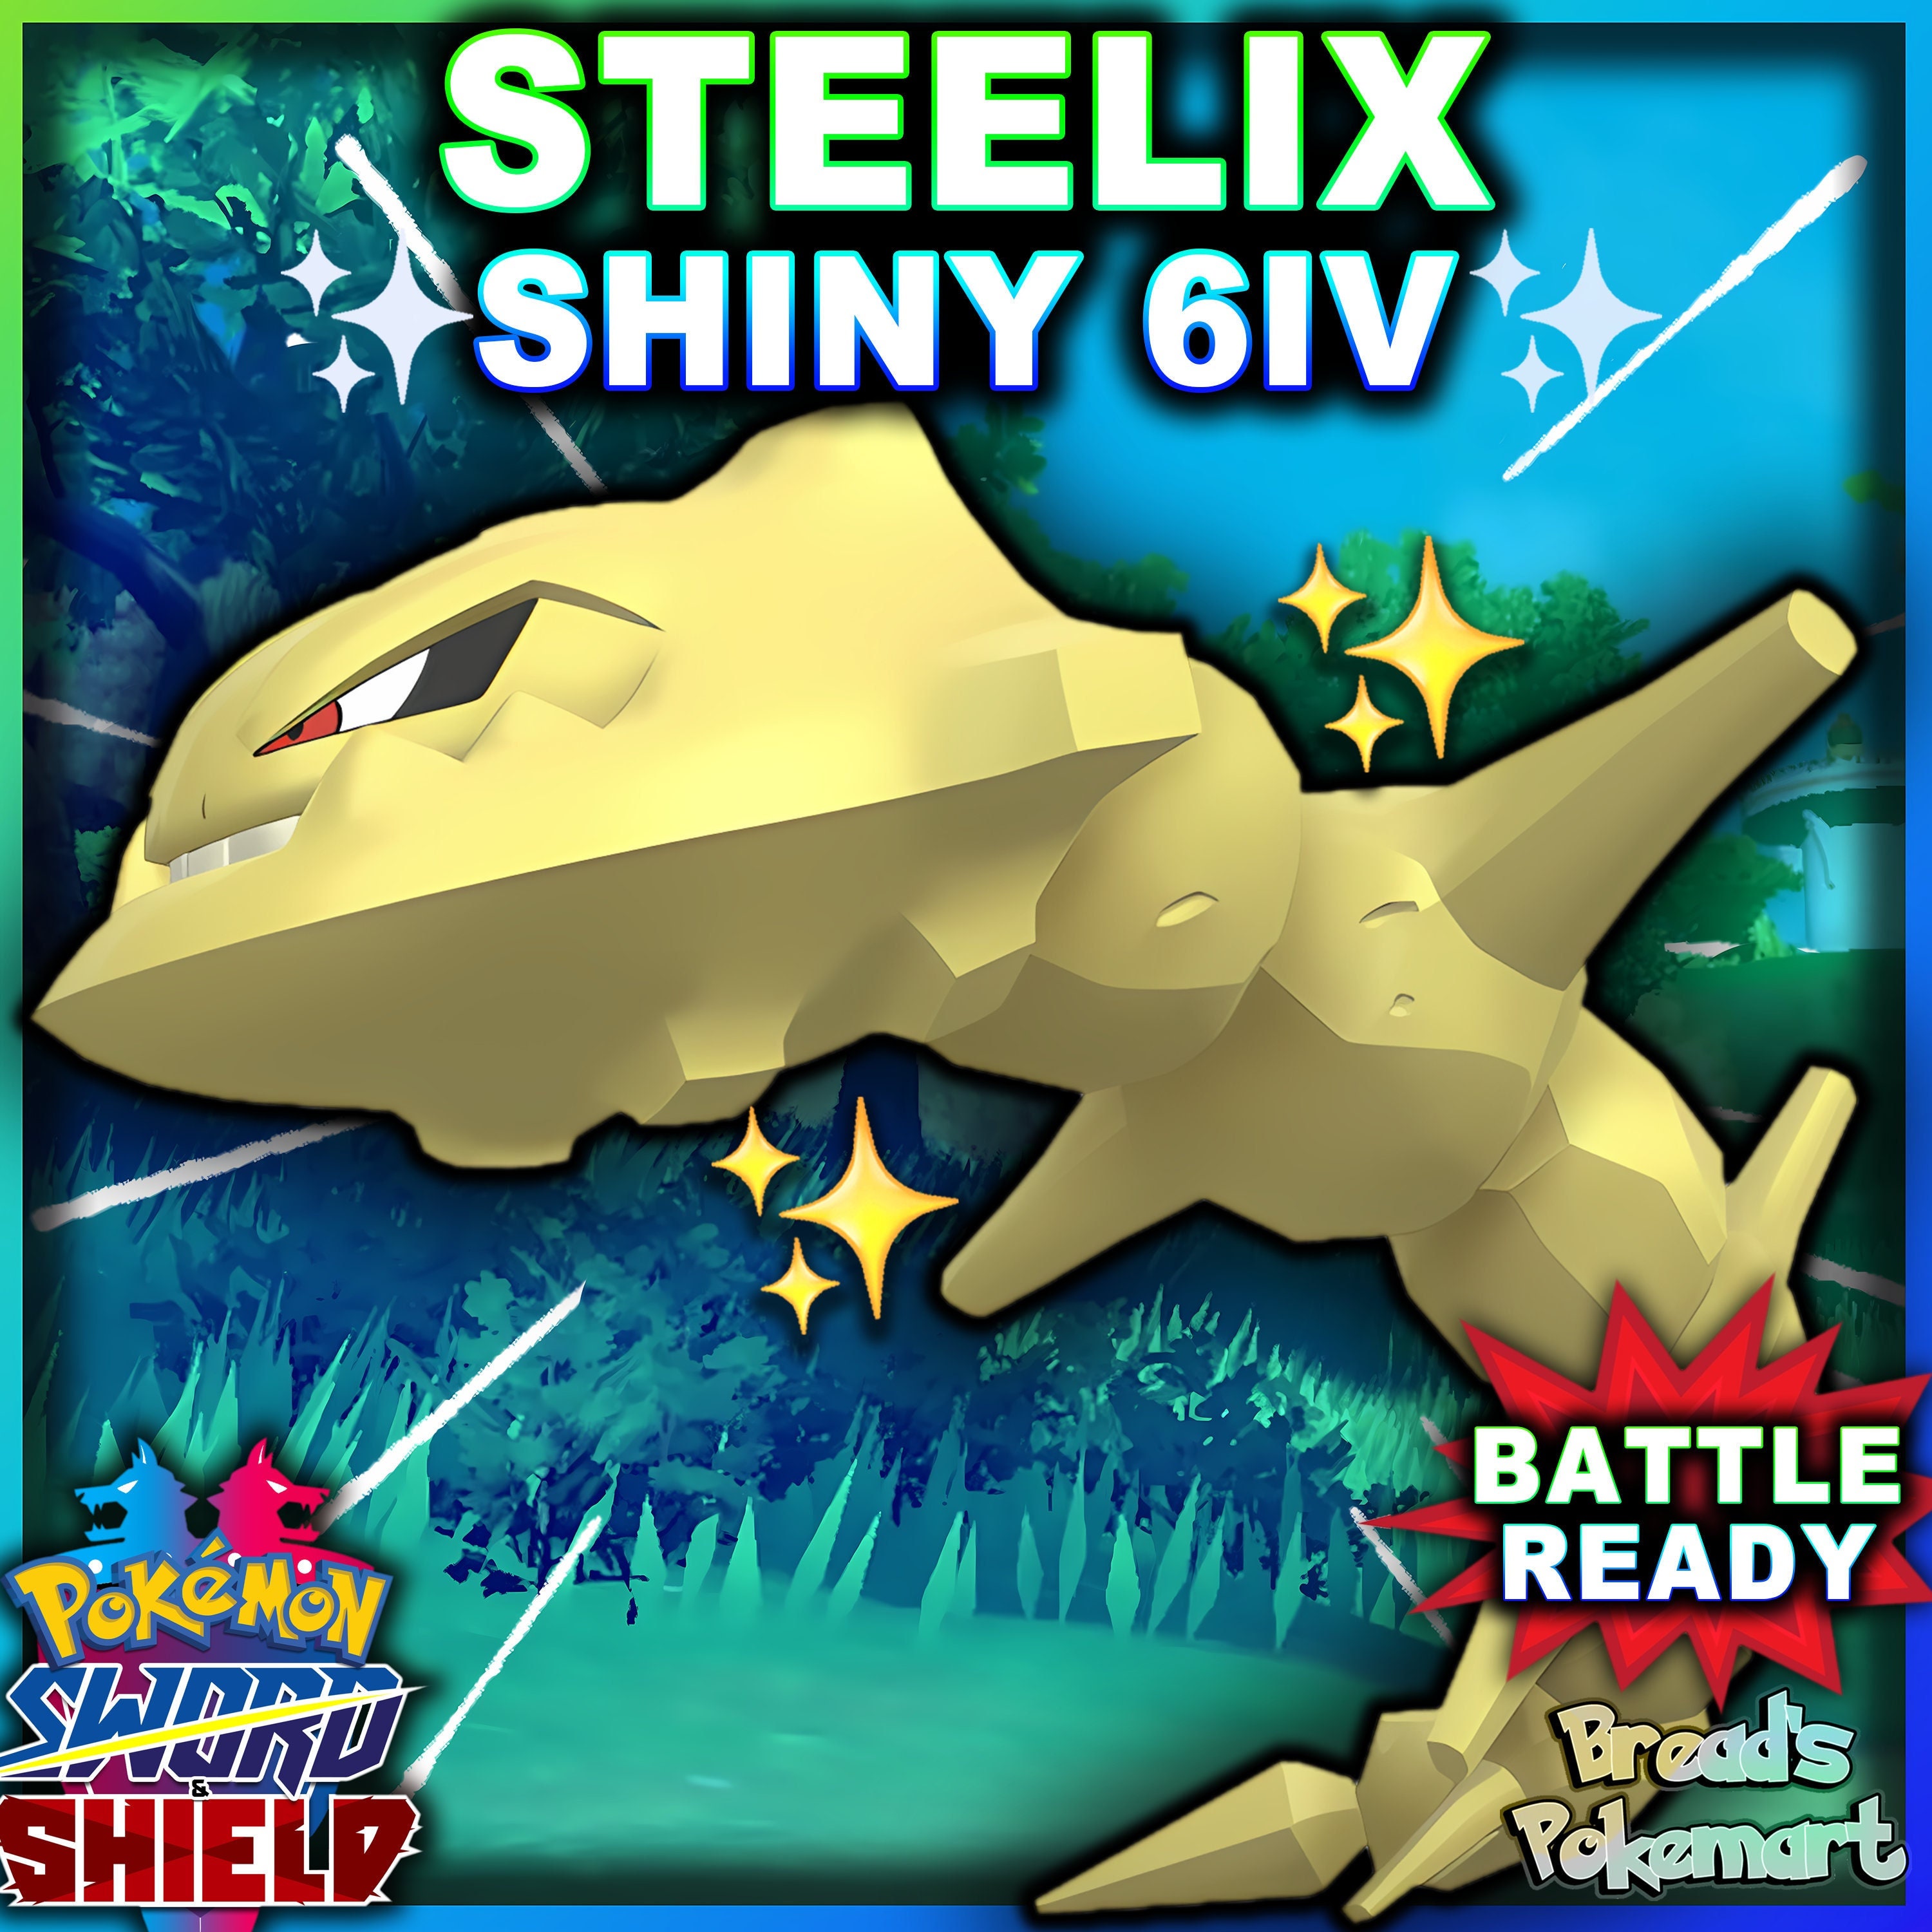 Base Sinnoh Pokedex Shiny 6IV Max Stats Pokemon Brilliant Diamond